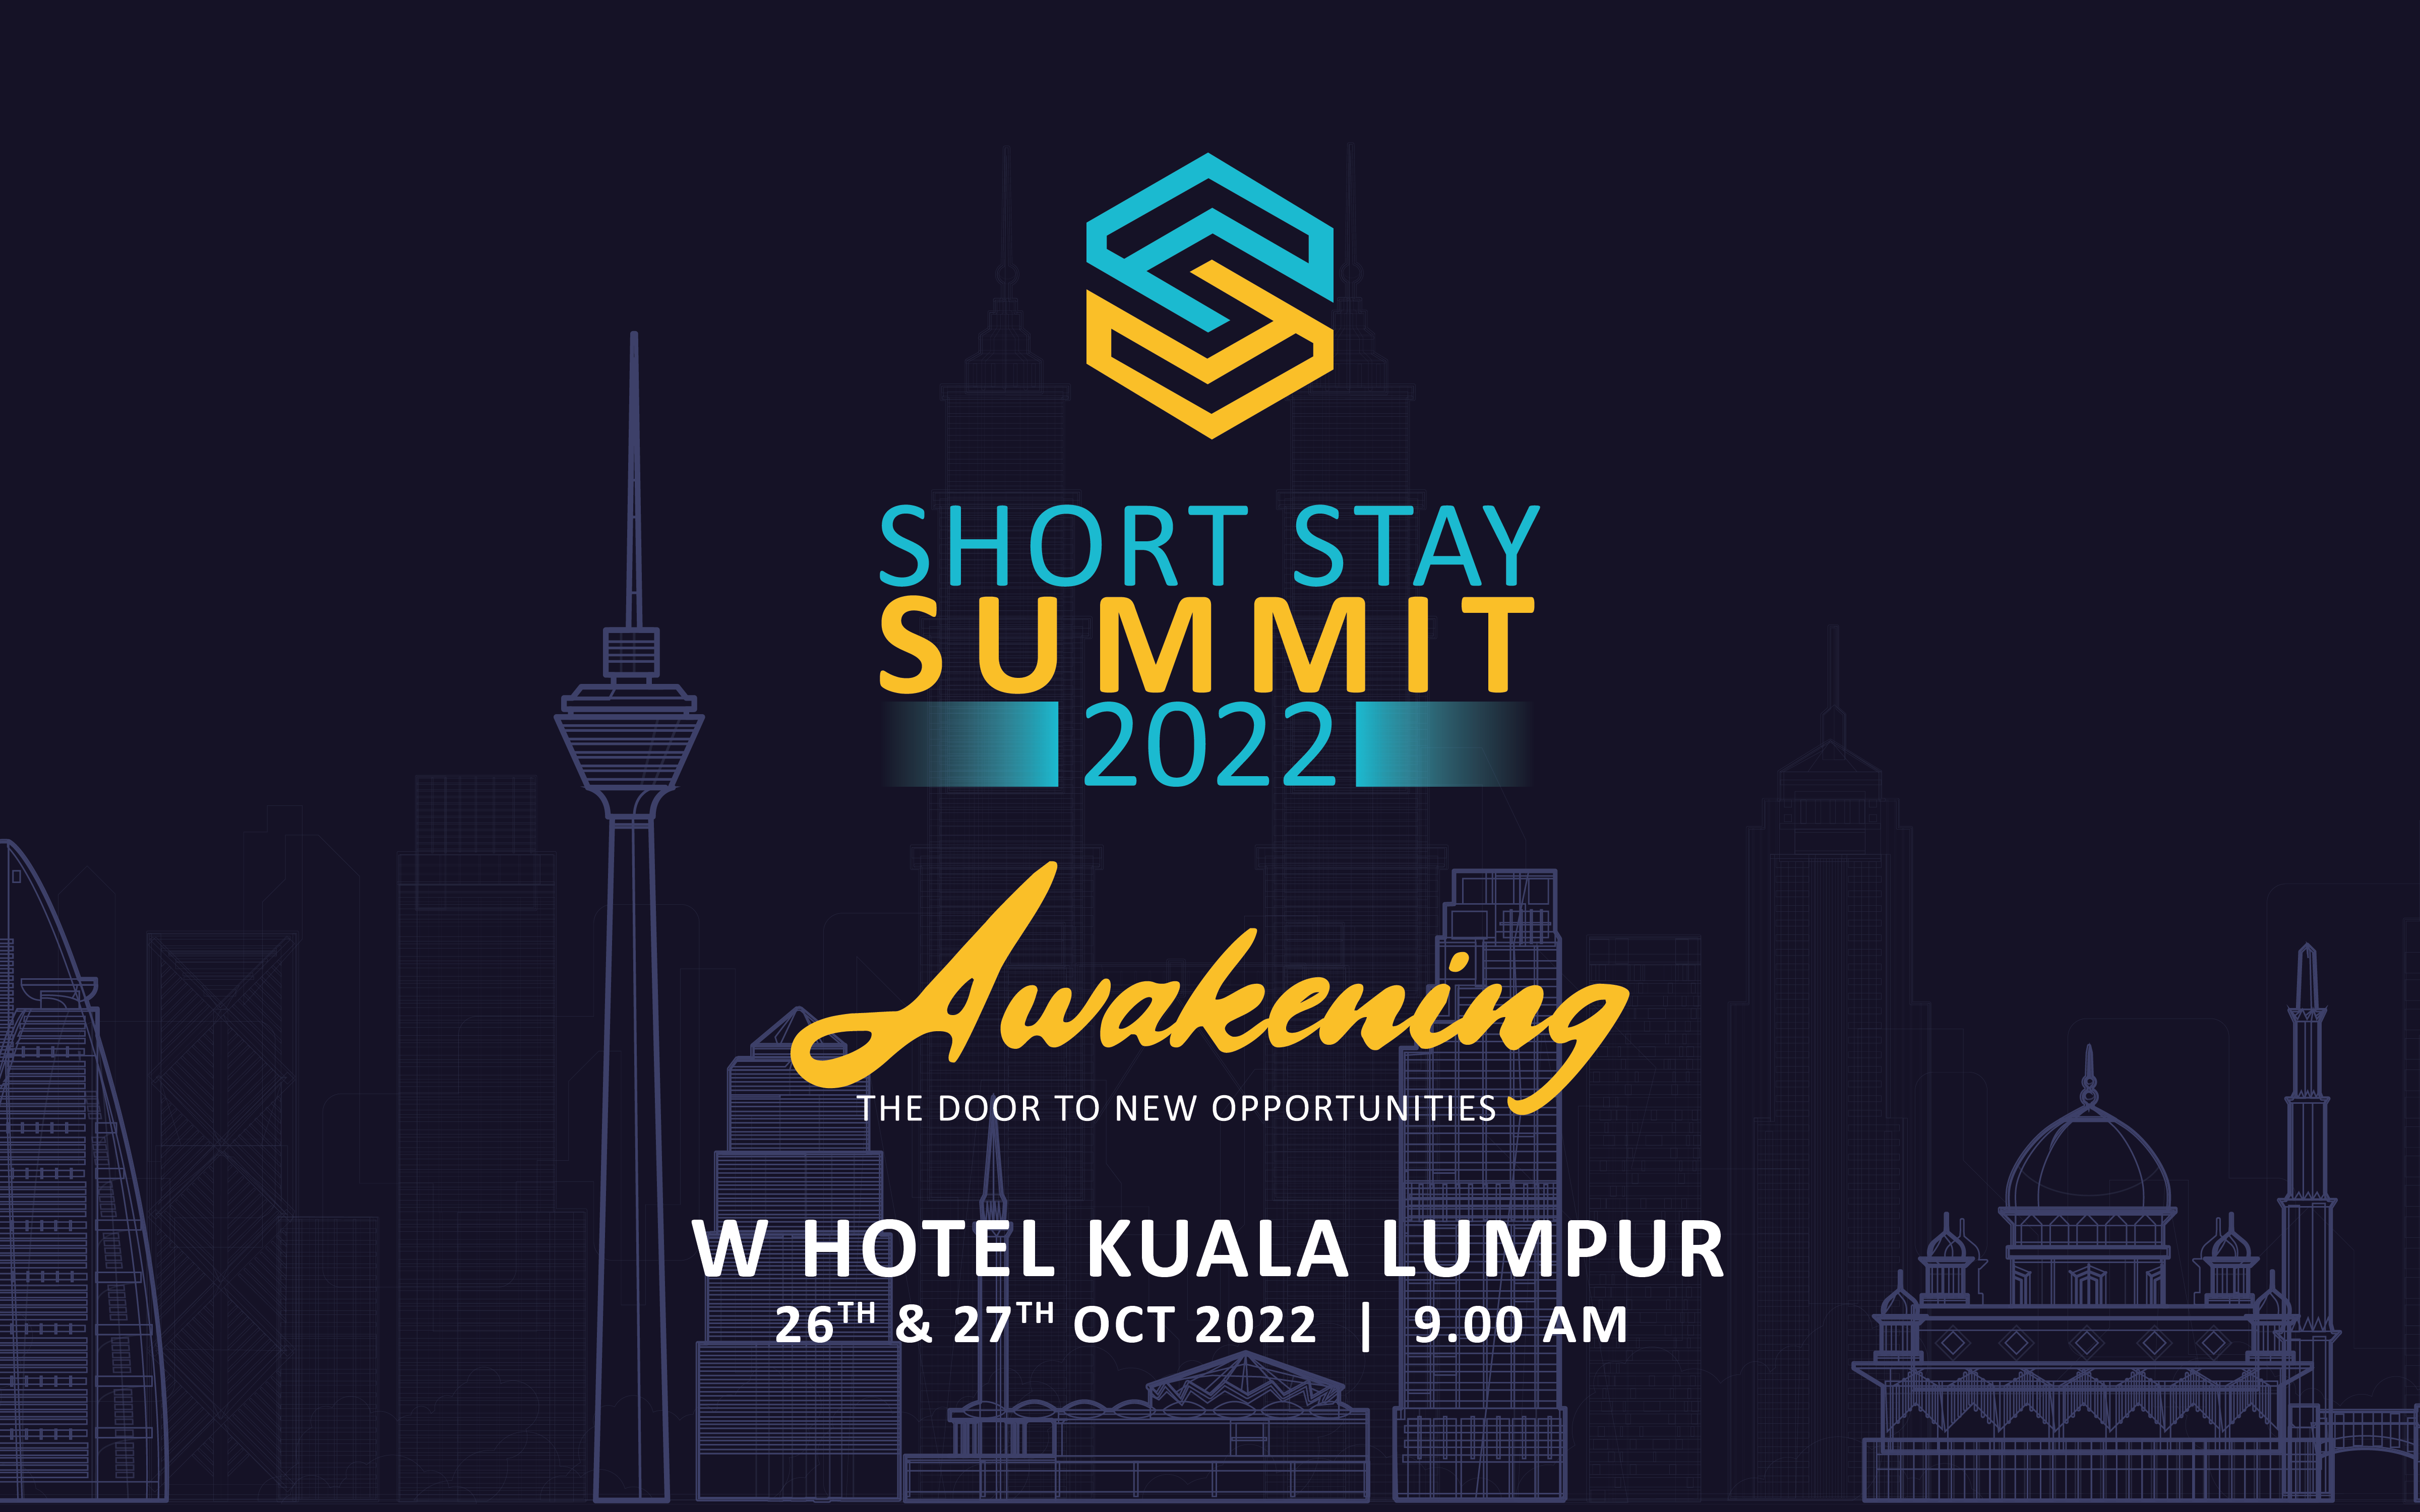 Hostastay, malaysia’s short stay management platform holds the awakening - short stay summit 2022 | weirdkaya